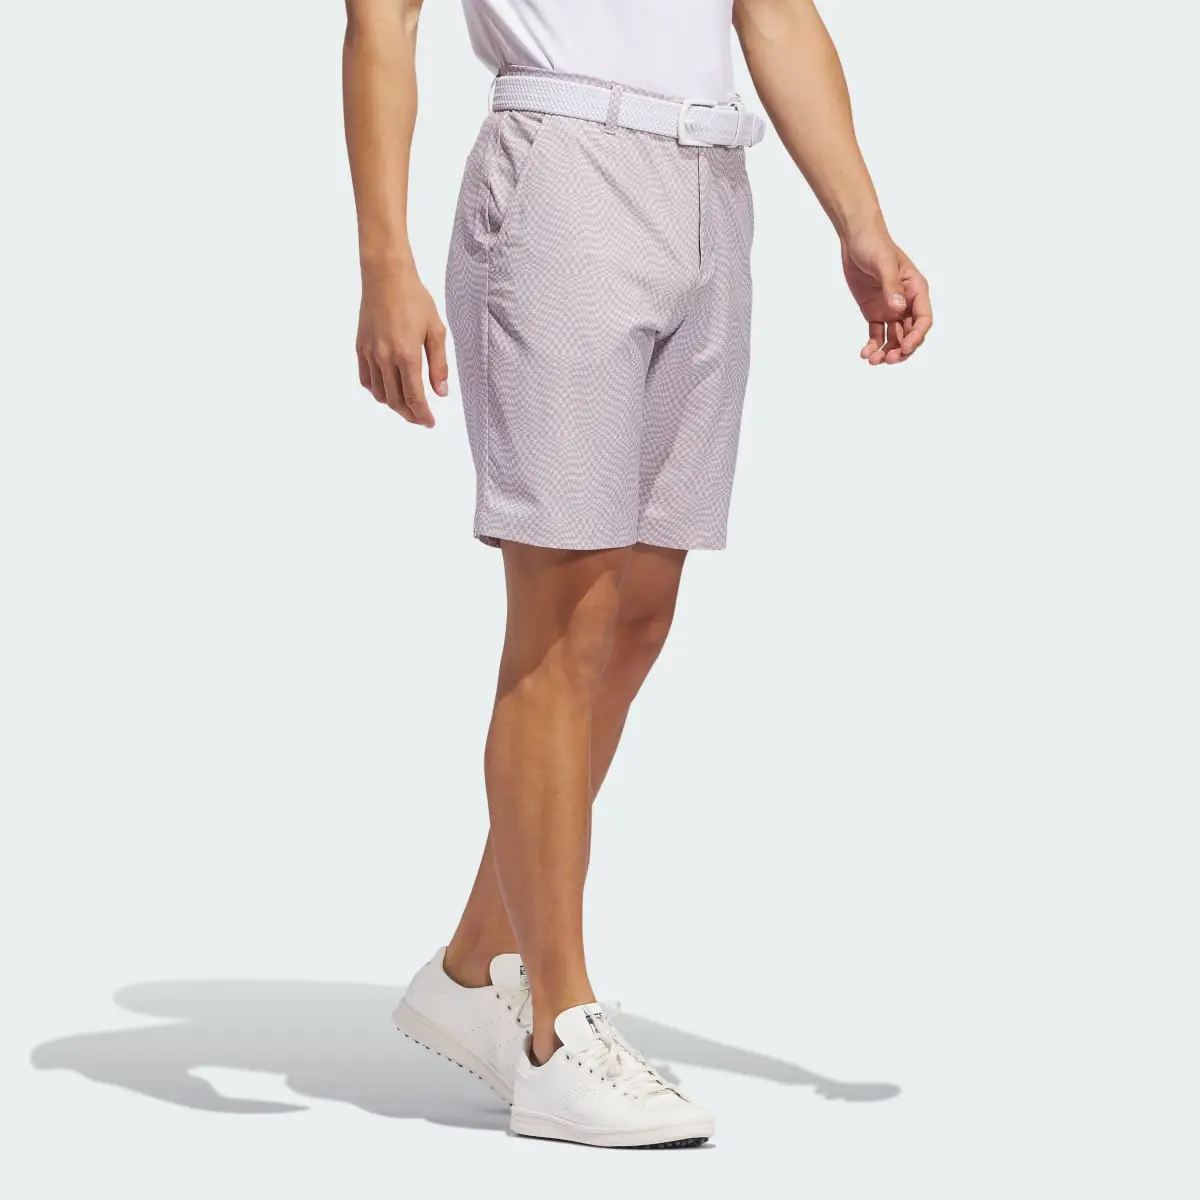 Adidas Ultimate365 Printed Shorts. 3